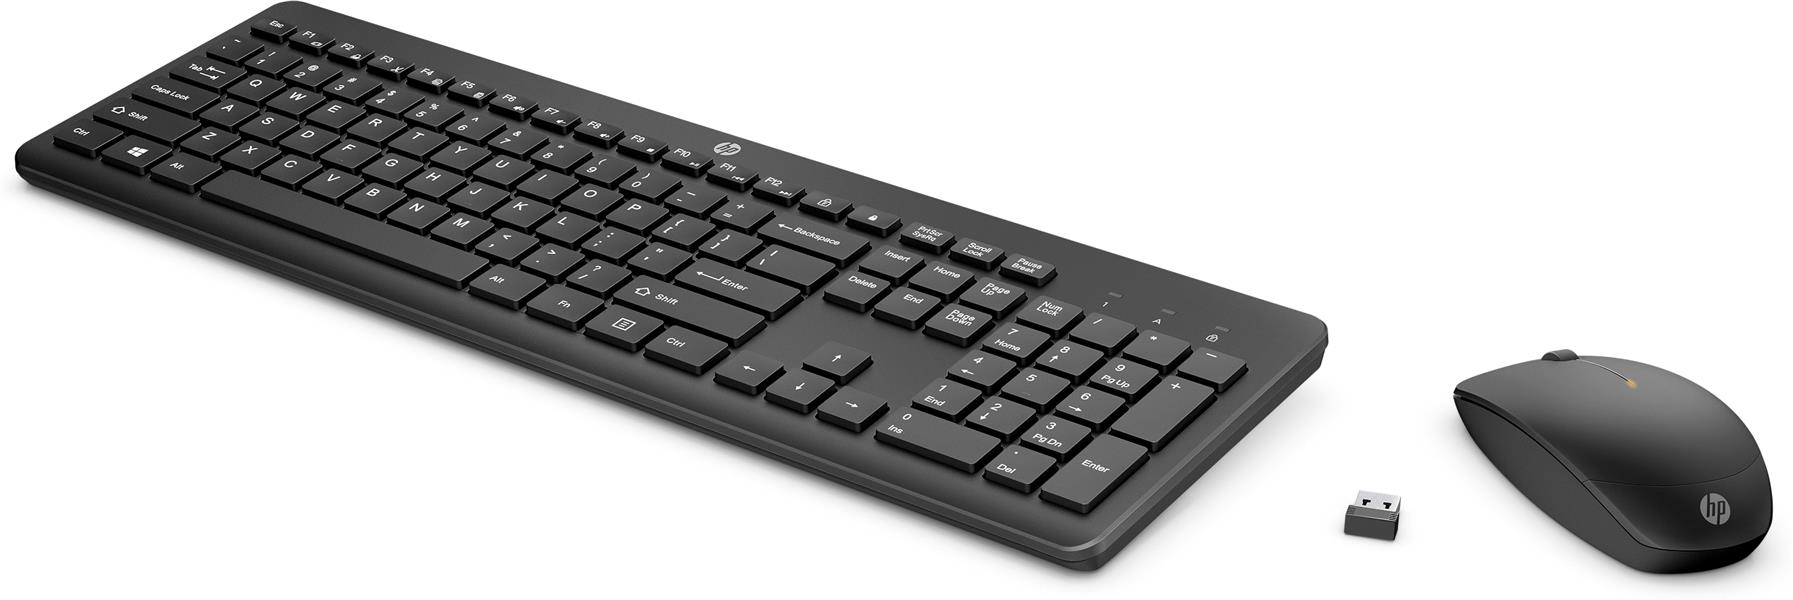 HP 235 draadloze muis en toetsenbordcombo (1Y4D0AA) + Prelude 15.6-inch Topload (1E7D7AA)